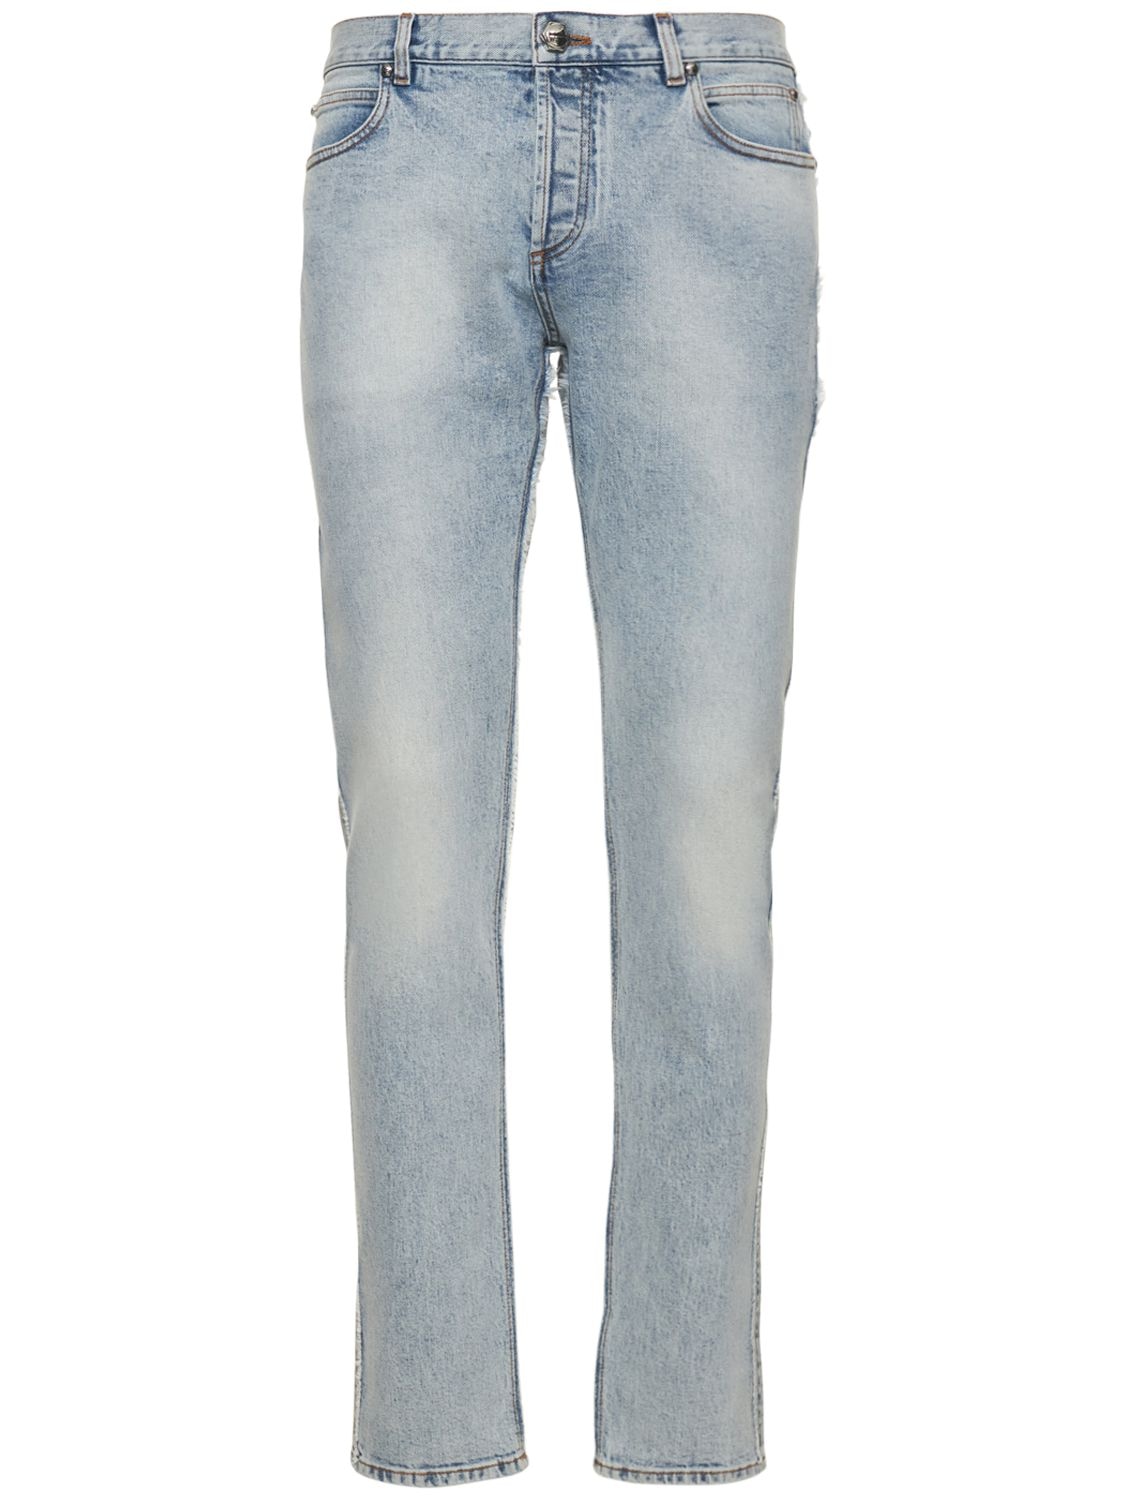 Jeans Slim Fit In Denim Vintage Wash - BALMAIN - Modalova